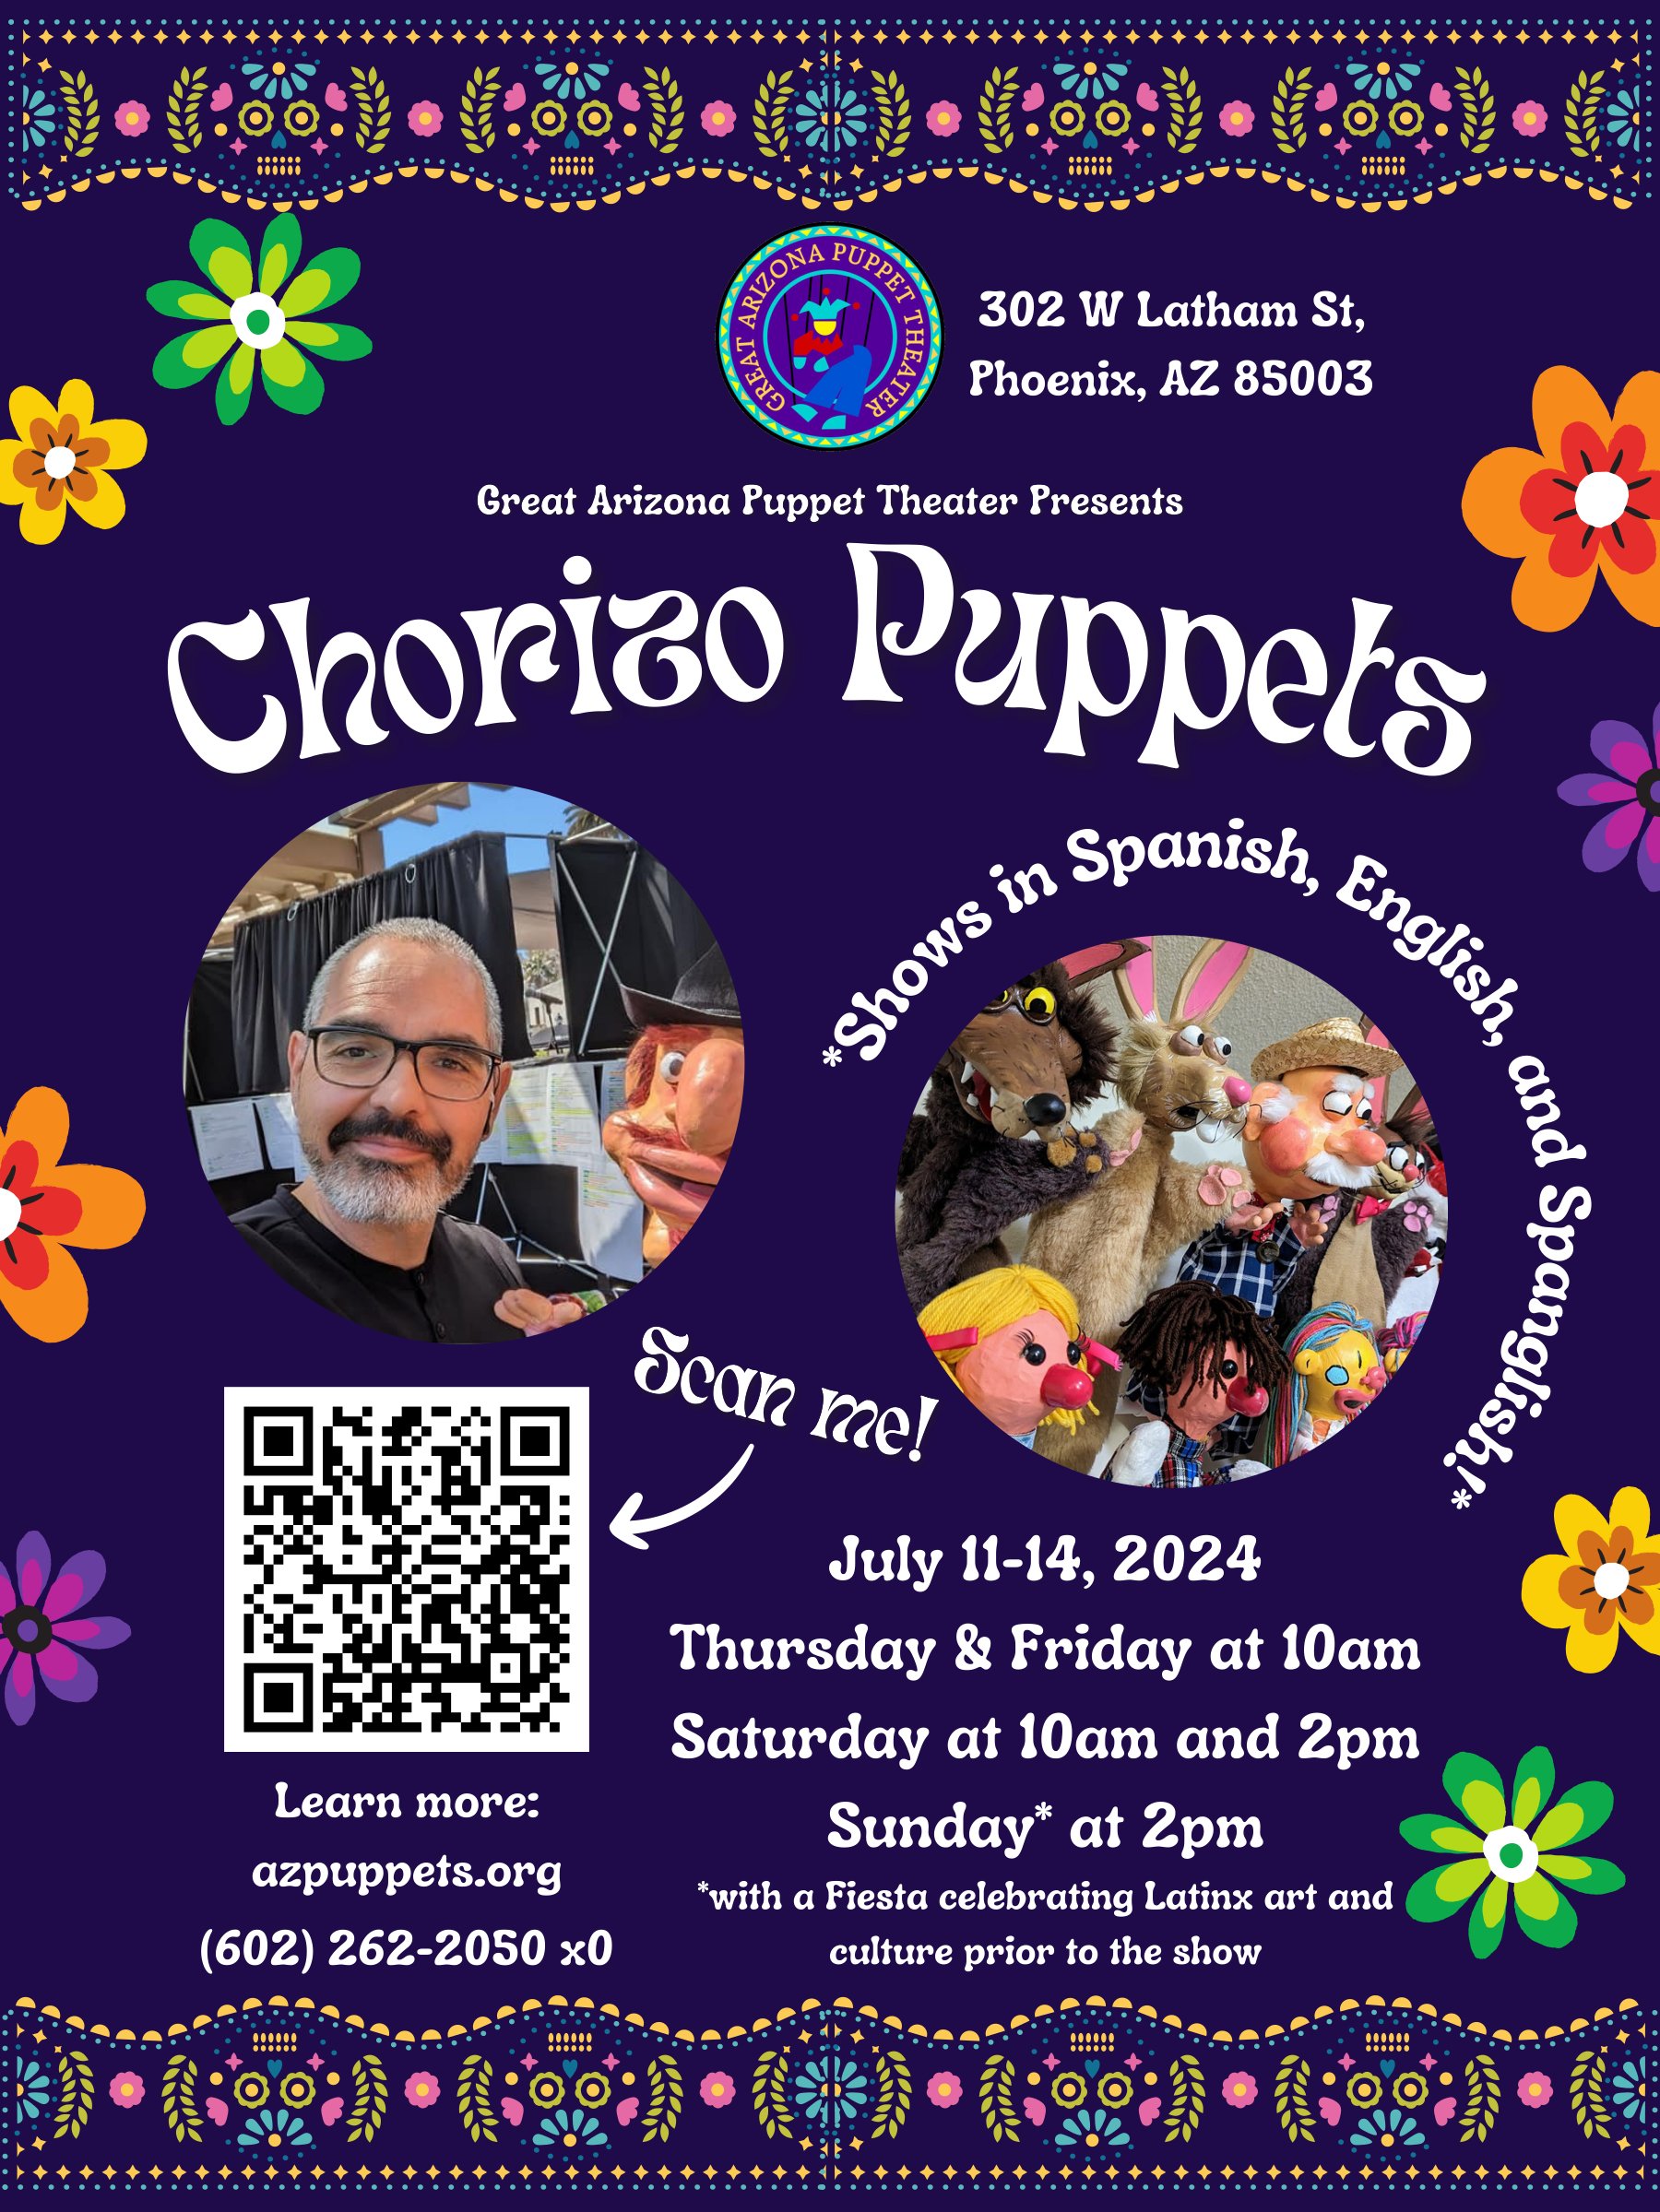 Guest Artist: Chorizo Puppets